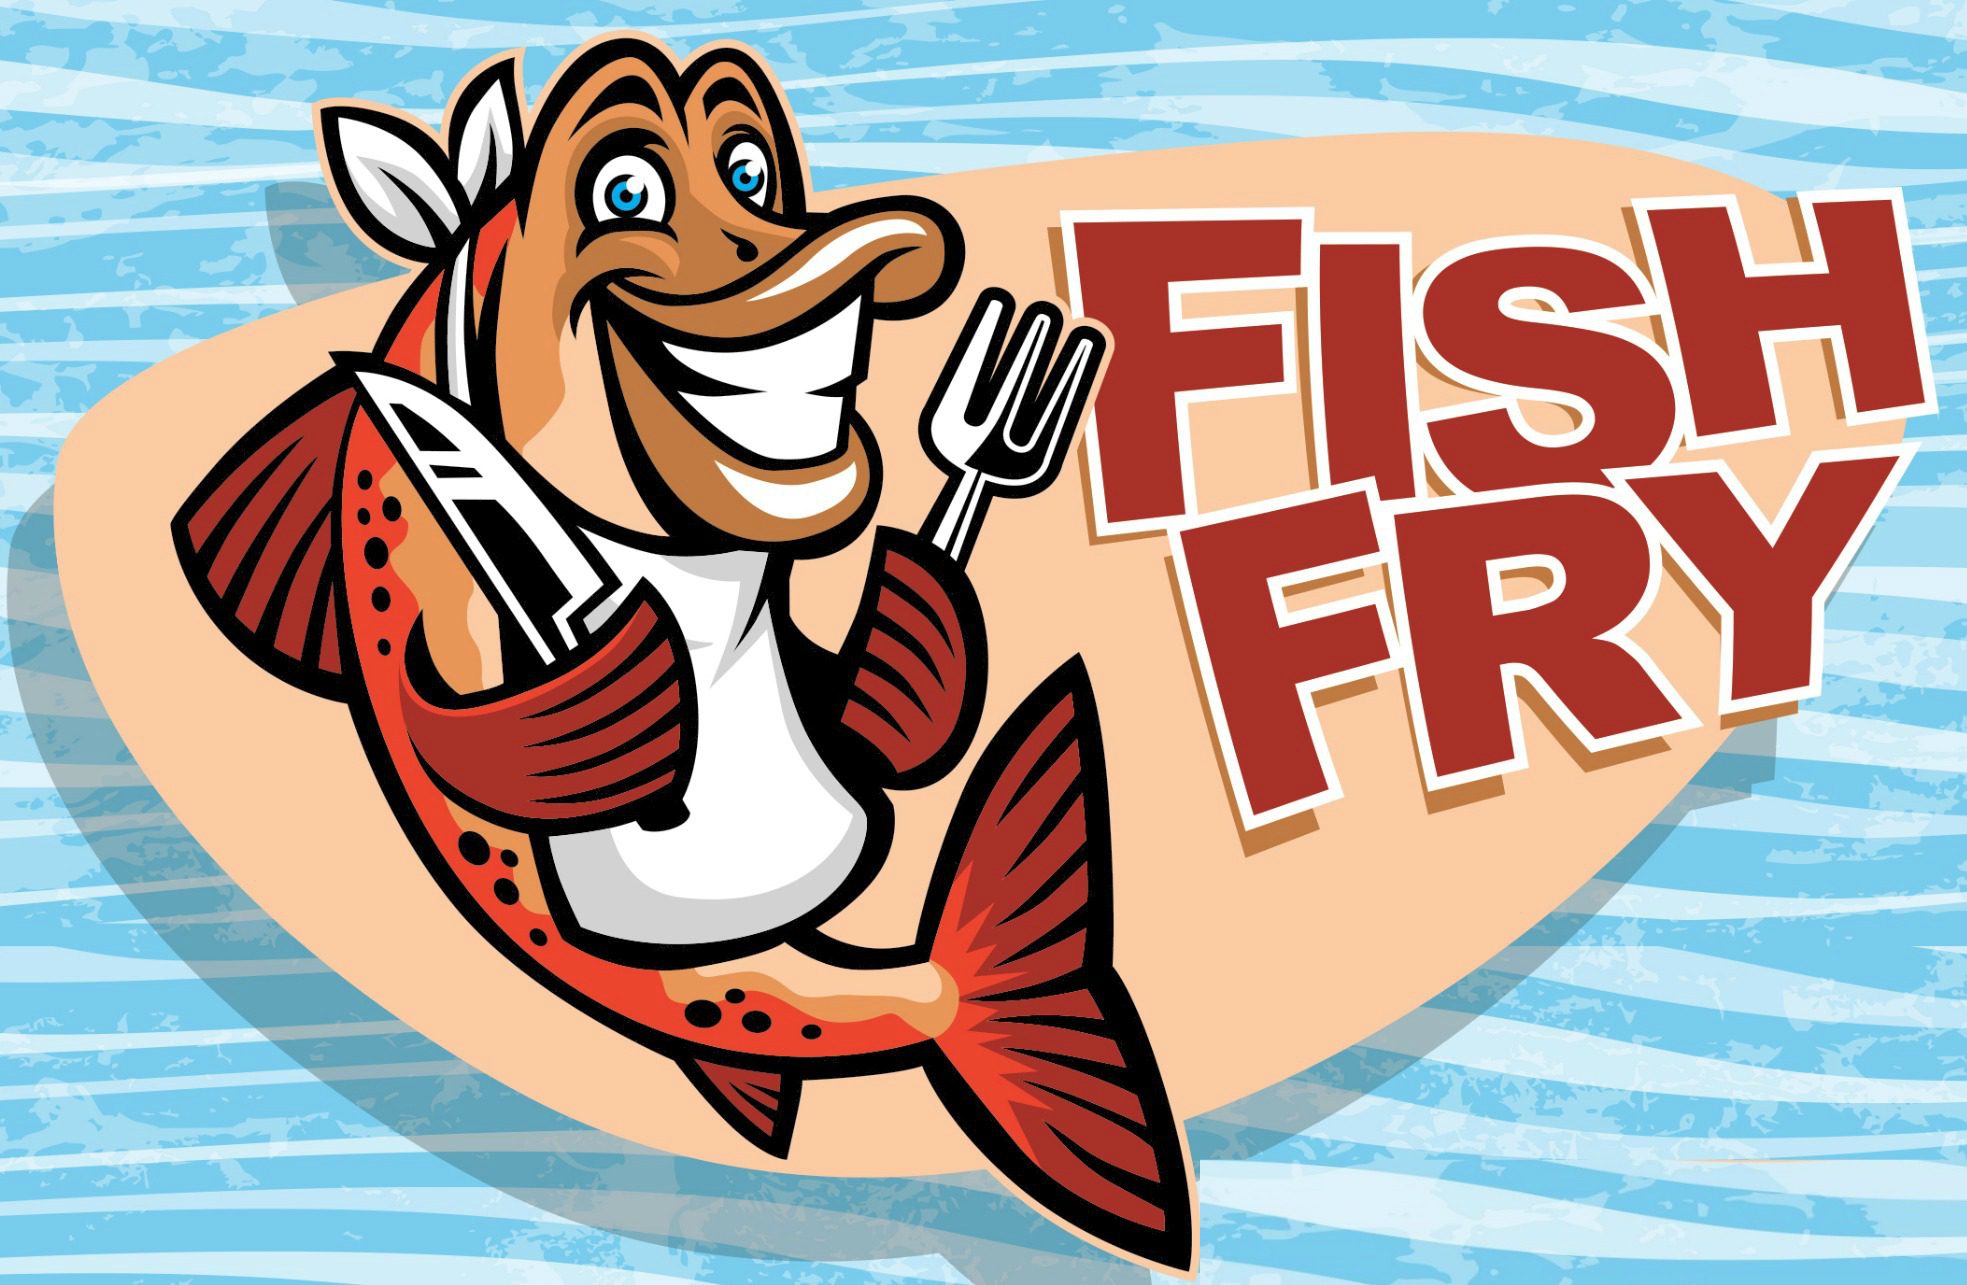 Lenten Fish Fry